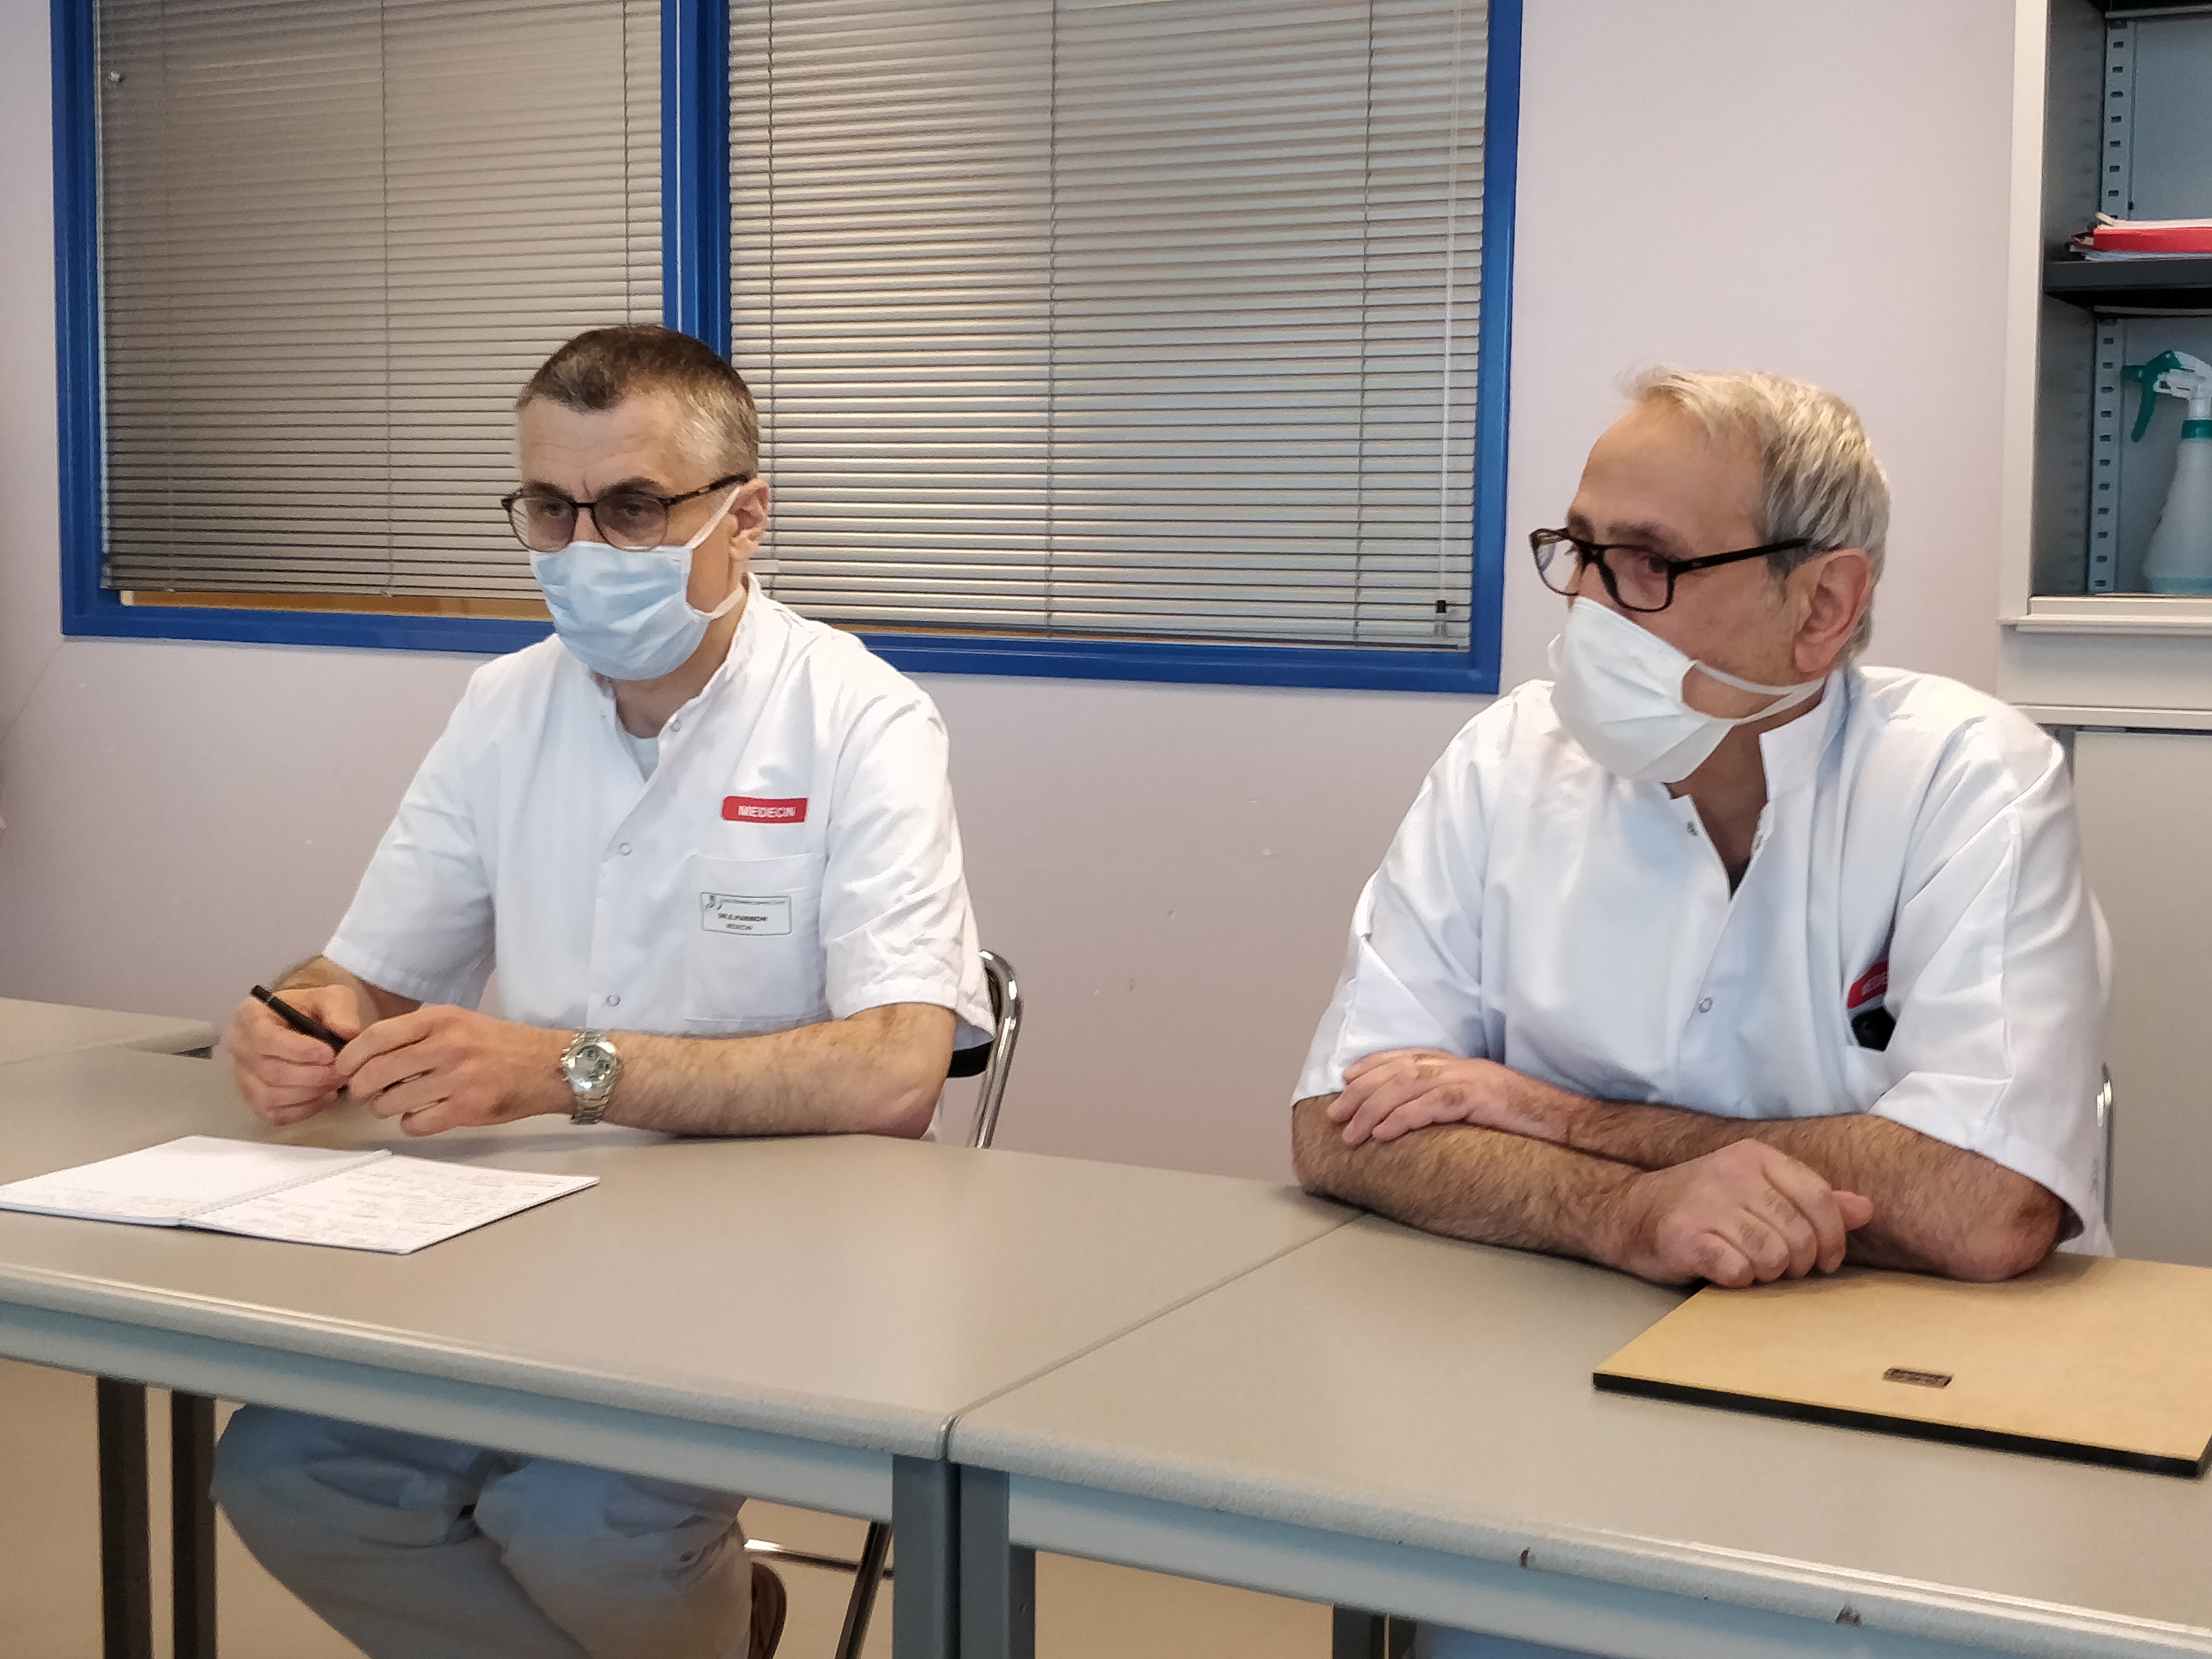 Le docteur Parmon (à gauche) et le docteur Alkhouja (à droite) sont urologues à l'hôpital de Bourges © RCF - Guillaume Martin-Deguéret.